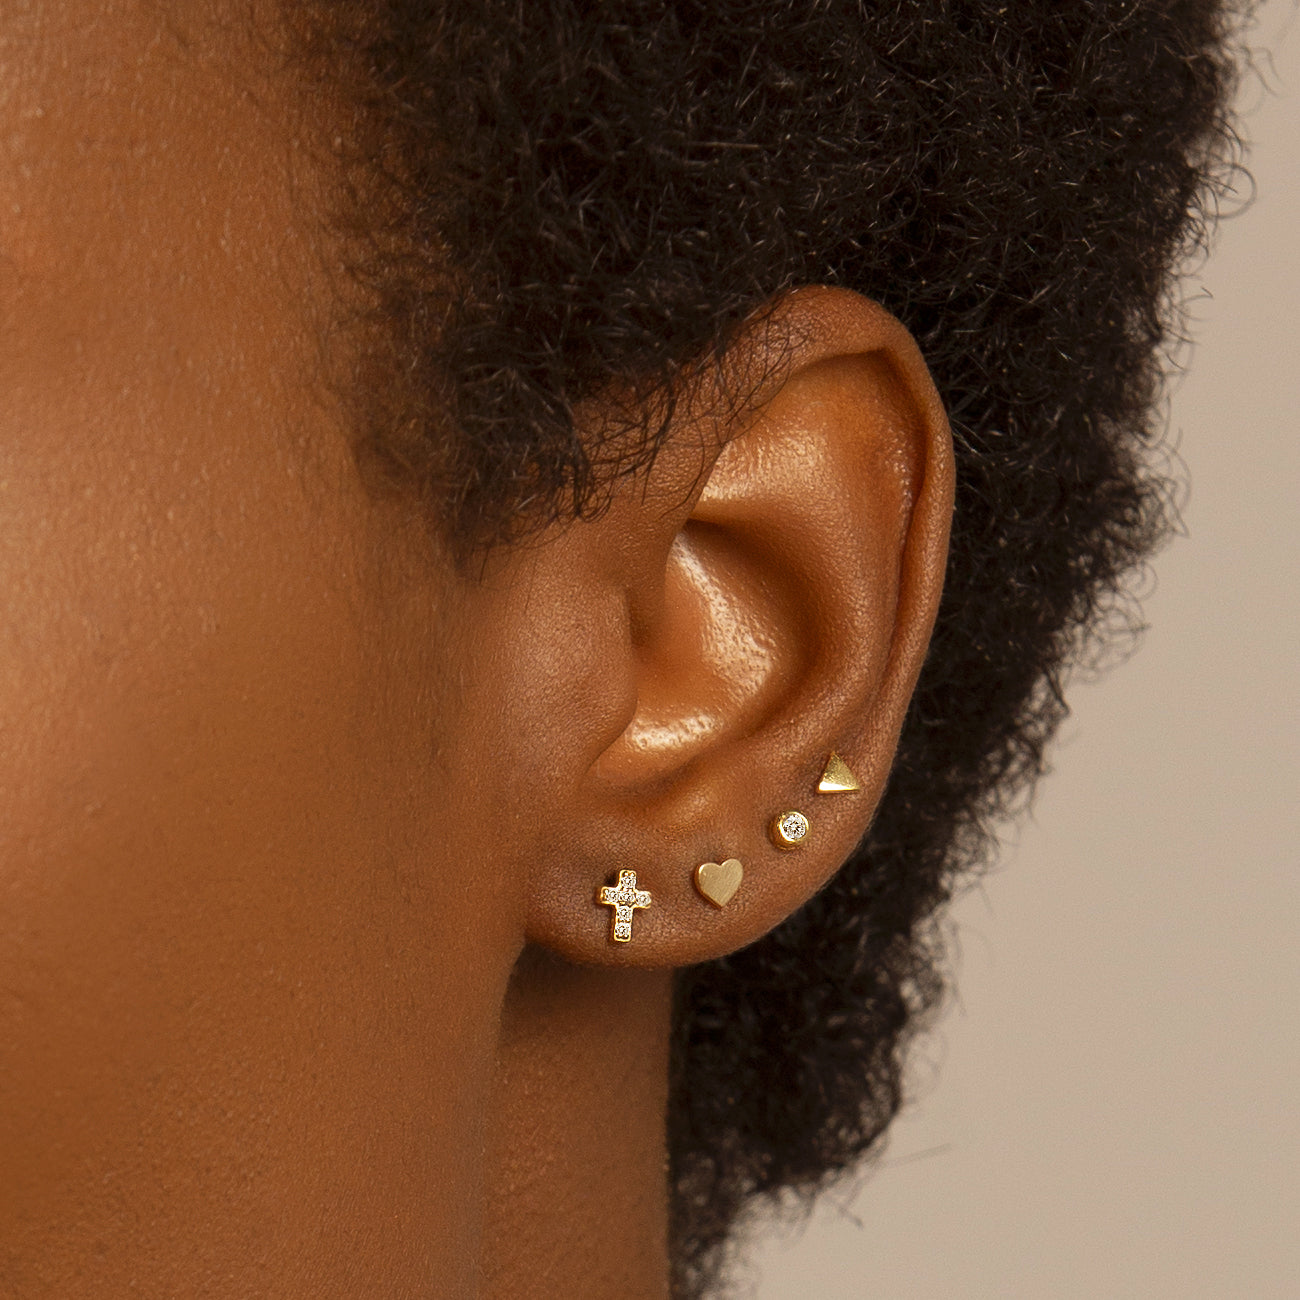  Gold Earrings